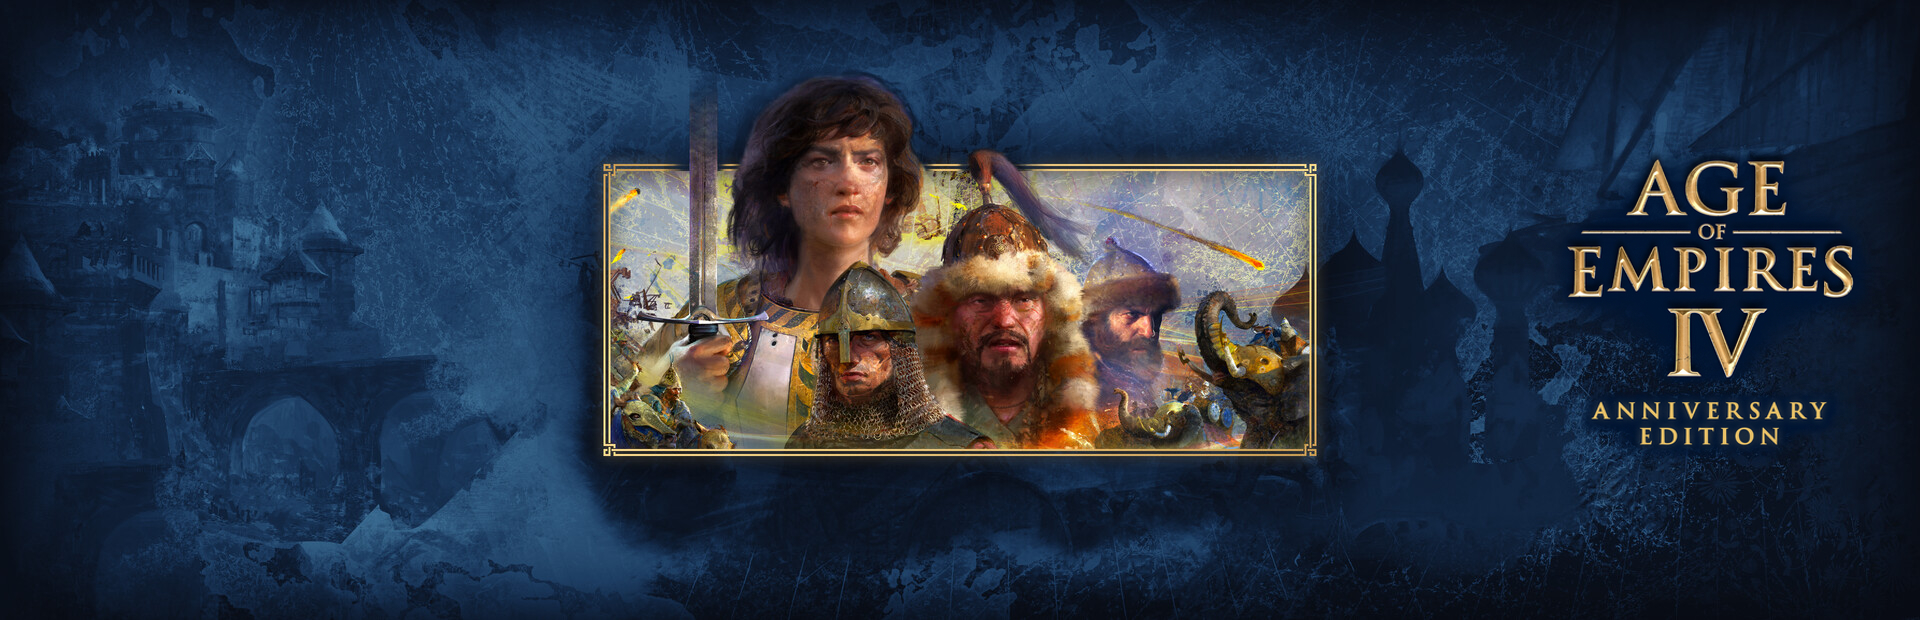 دانلود بازی Age of Empires IV برای پی سی | گیمباتو